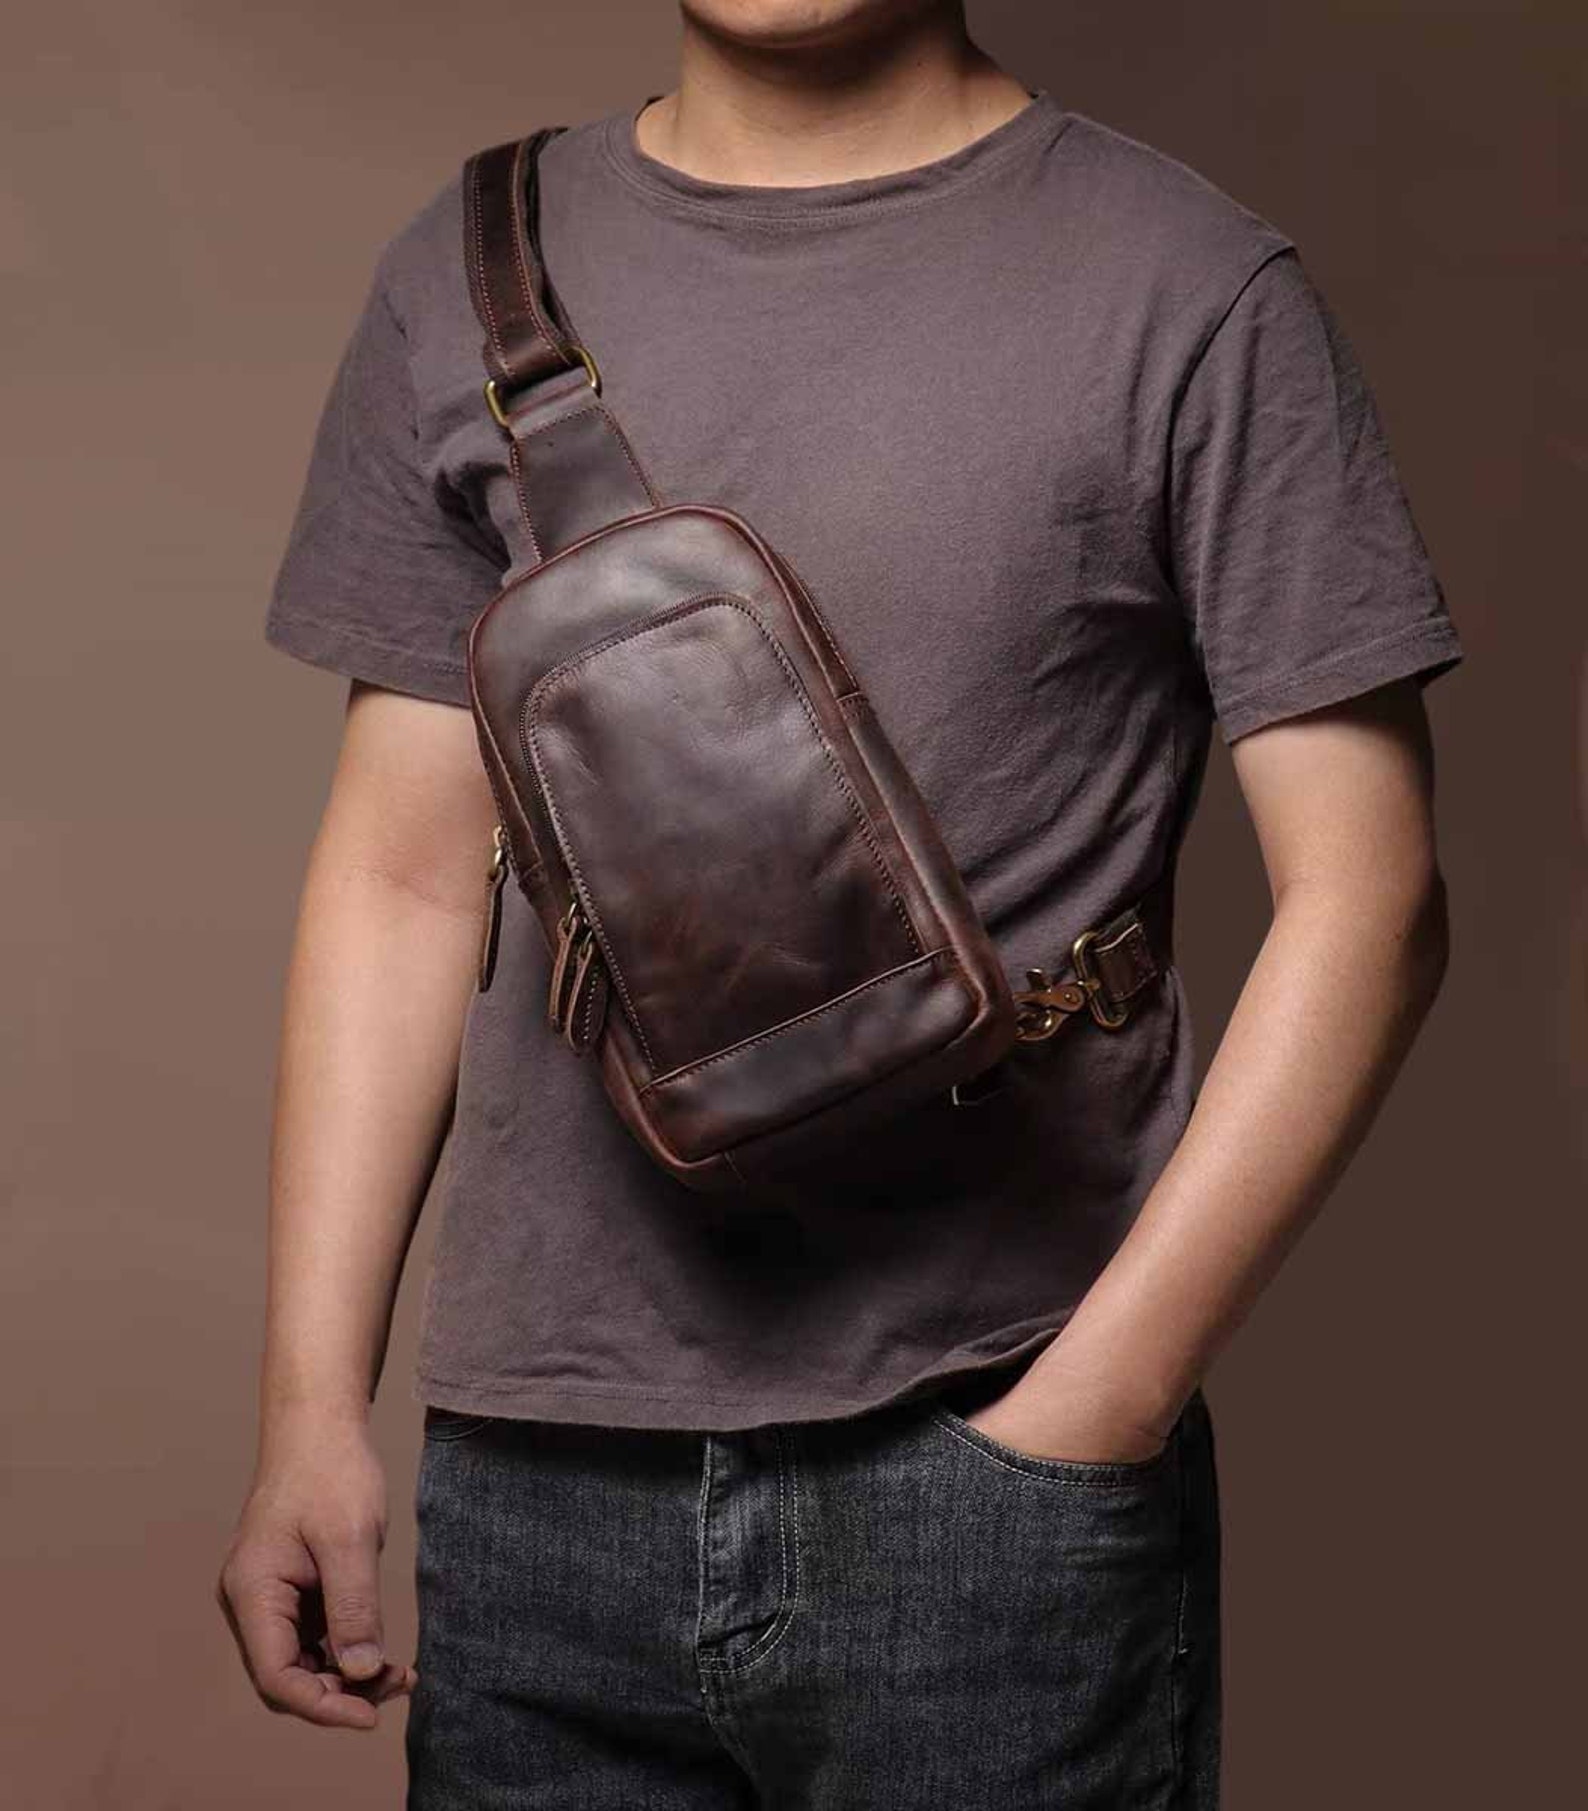 Leather Sling Bag Leather Chest Bag Shoulder Bag Leather - Etsy